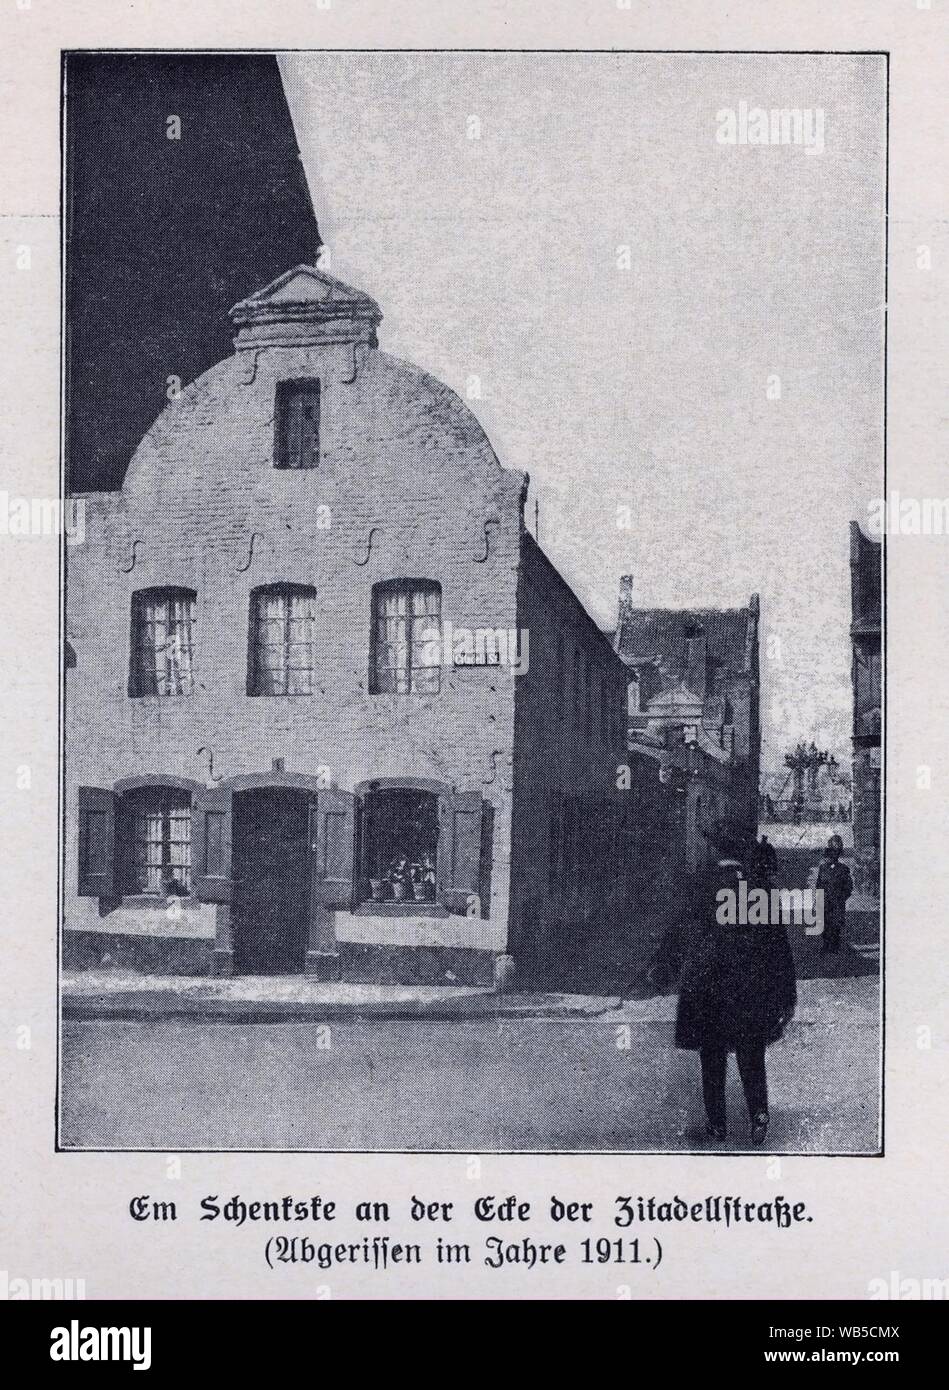 Düsseldorf, Zitadellstraße, Ecke Schulstraße, barocker Schweifgiebel gekrönt von einem kleinen Dreiecksgiebel, Gastwirtschaft Im Schenkschen ‥9E Em Schenkske’, abgerissen im Jahre 1911. Stock Photo